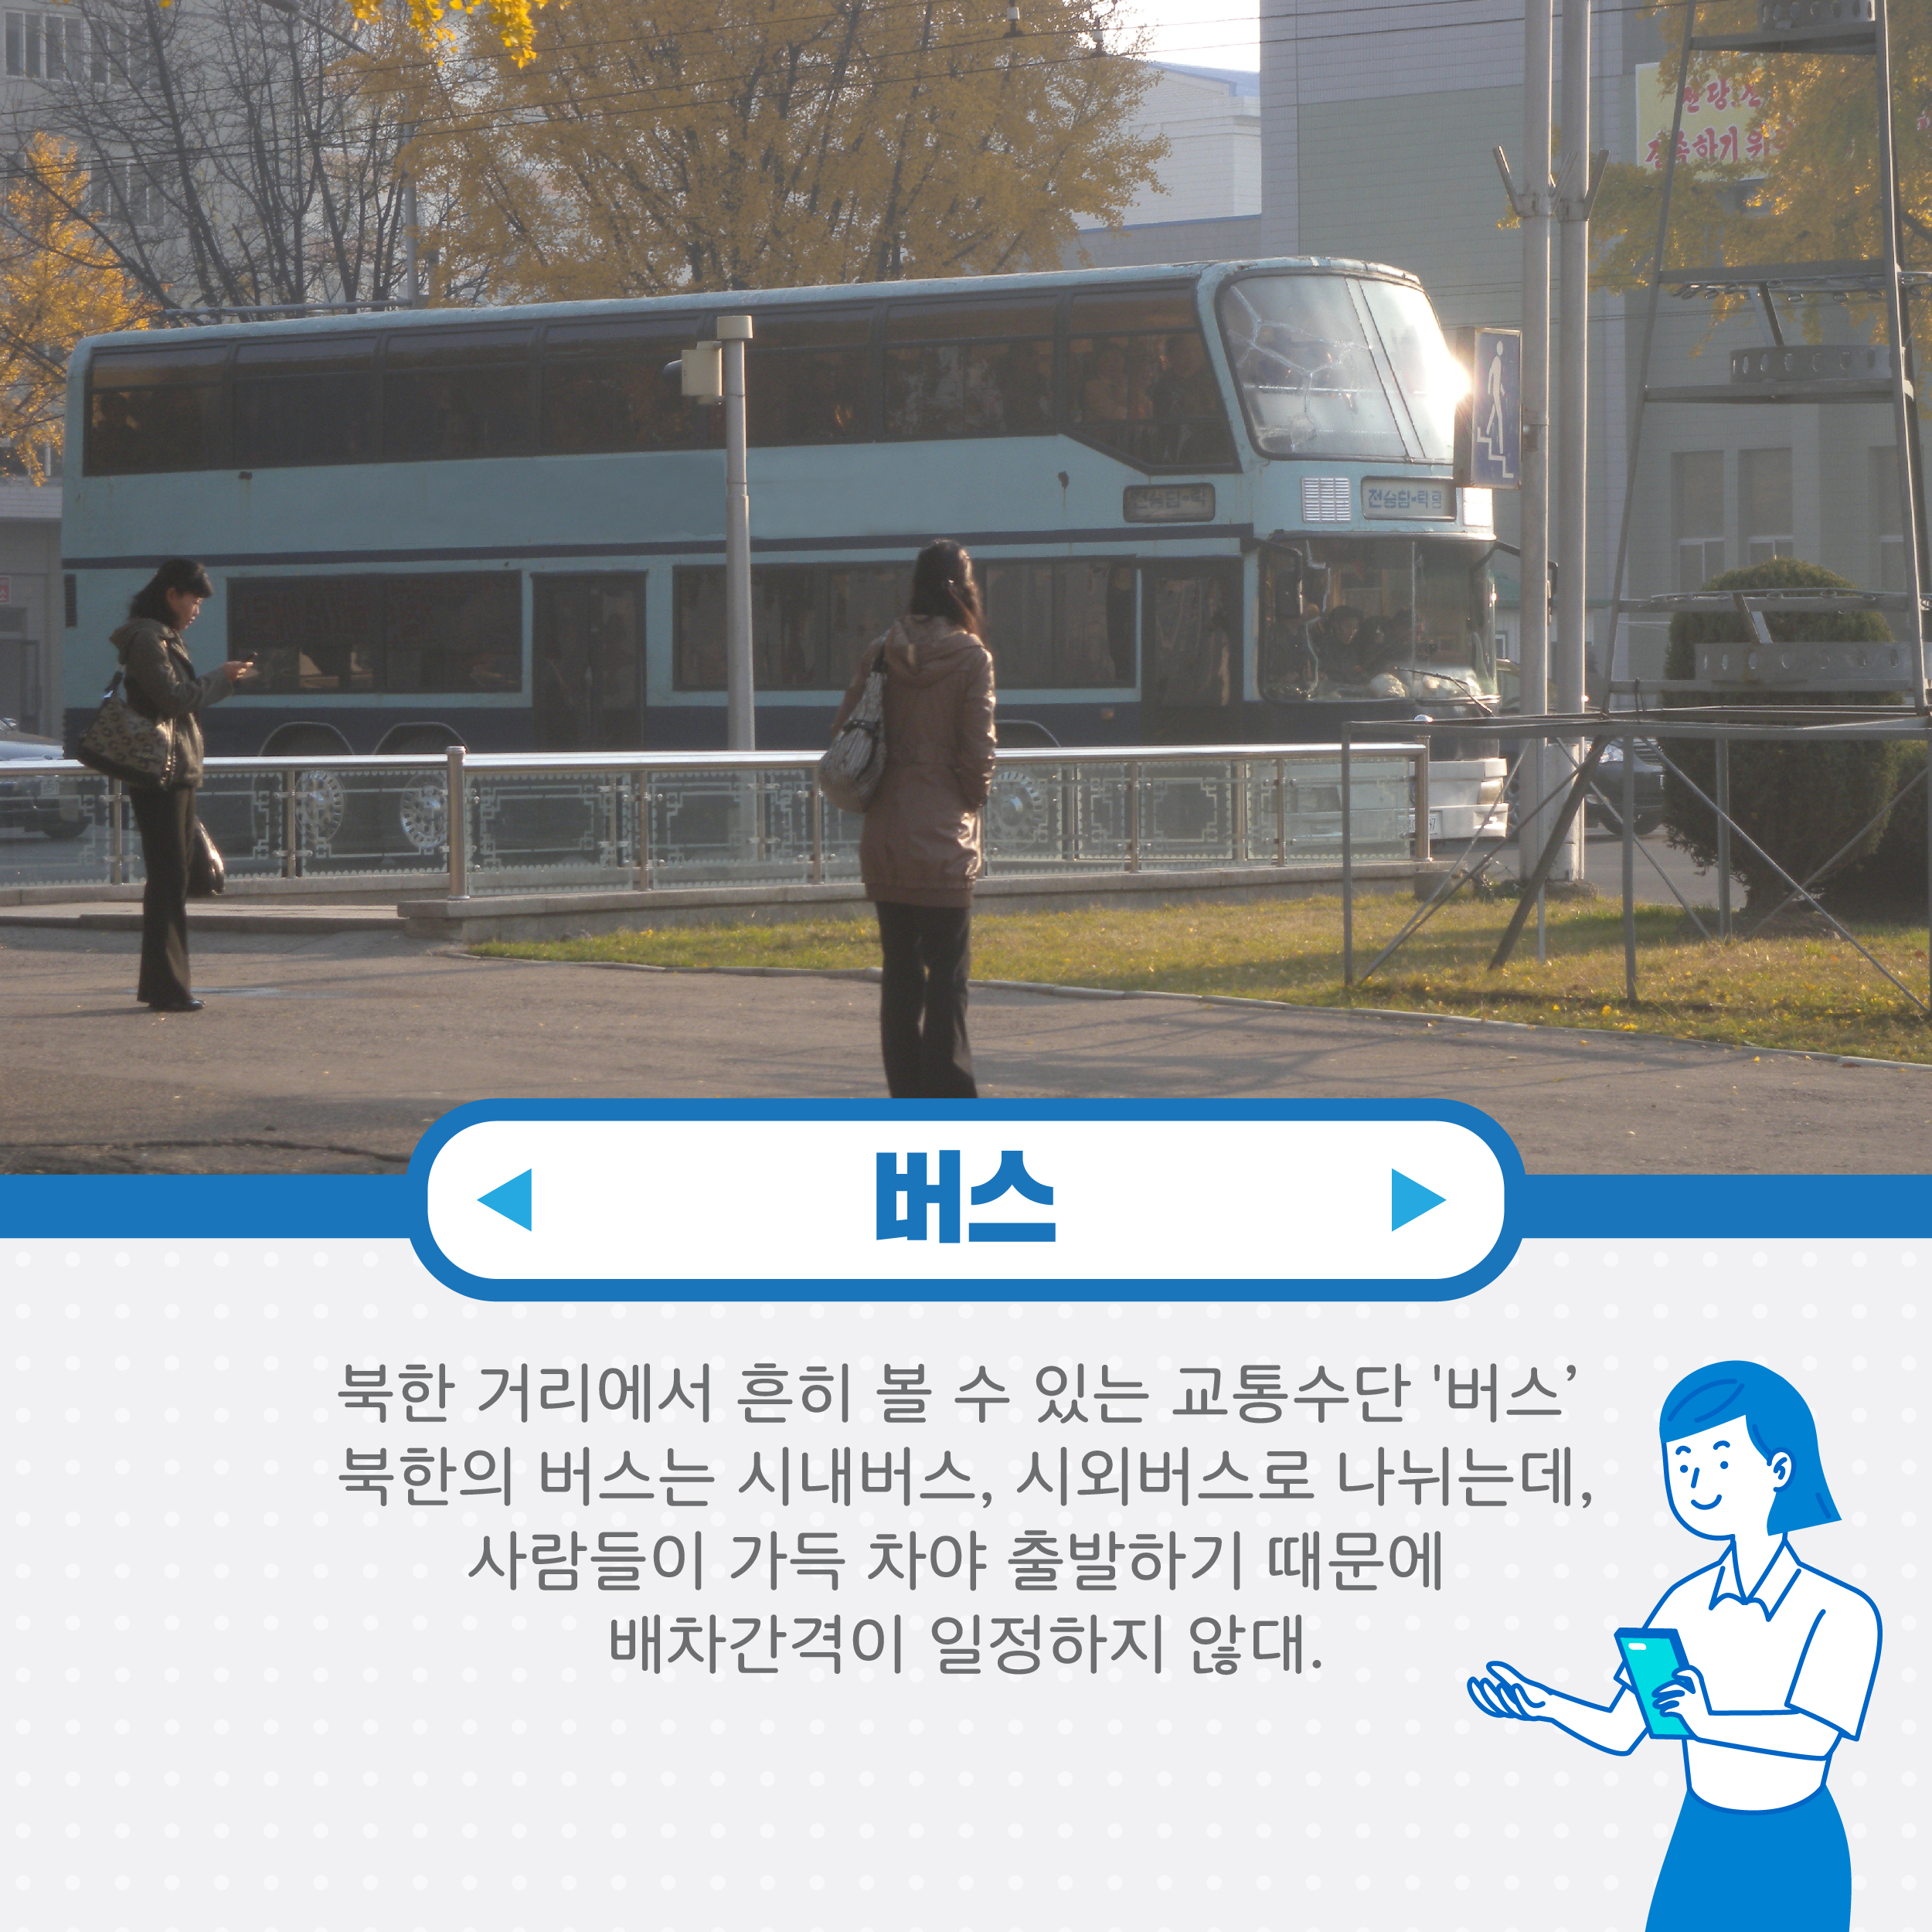 버스 북한 거리에서 흔히 볼 수 있는 교통수단 버스 북한의 버스는 시내버스, 시외버스로 나뉘는데 사람들이 가득차야 출발하기 때문에 배차 간격이 일정하지 않대.